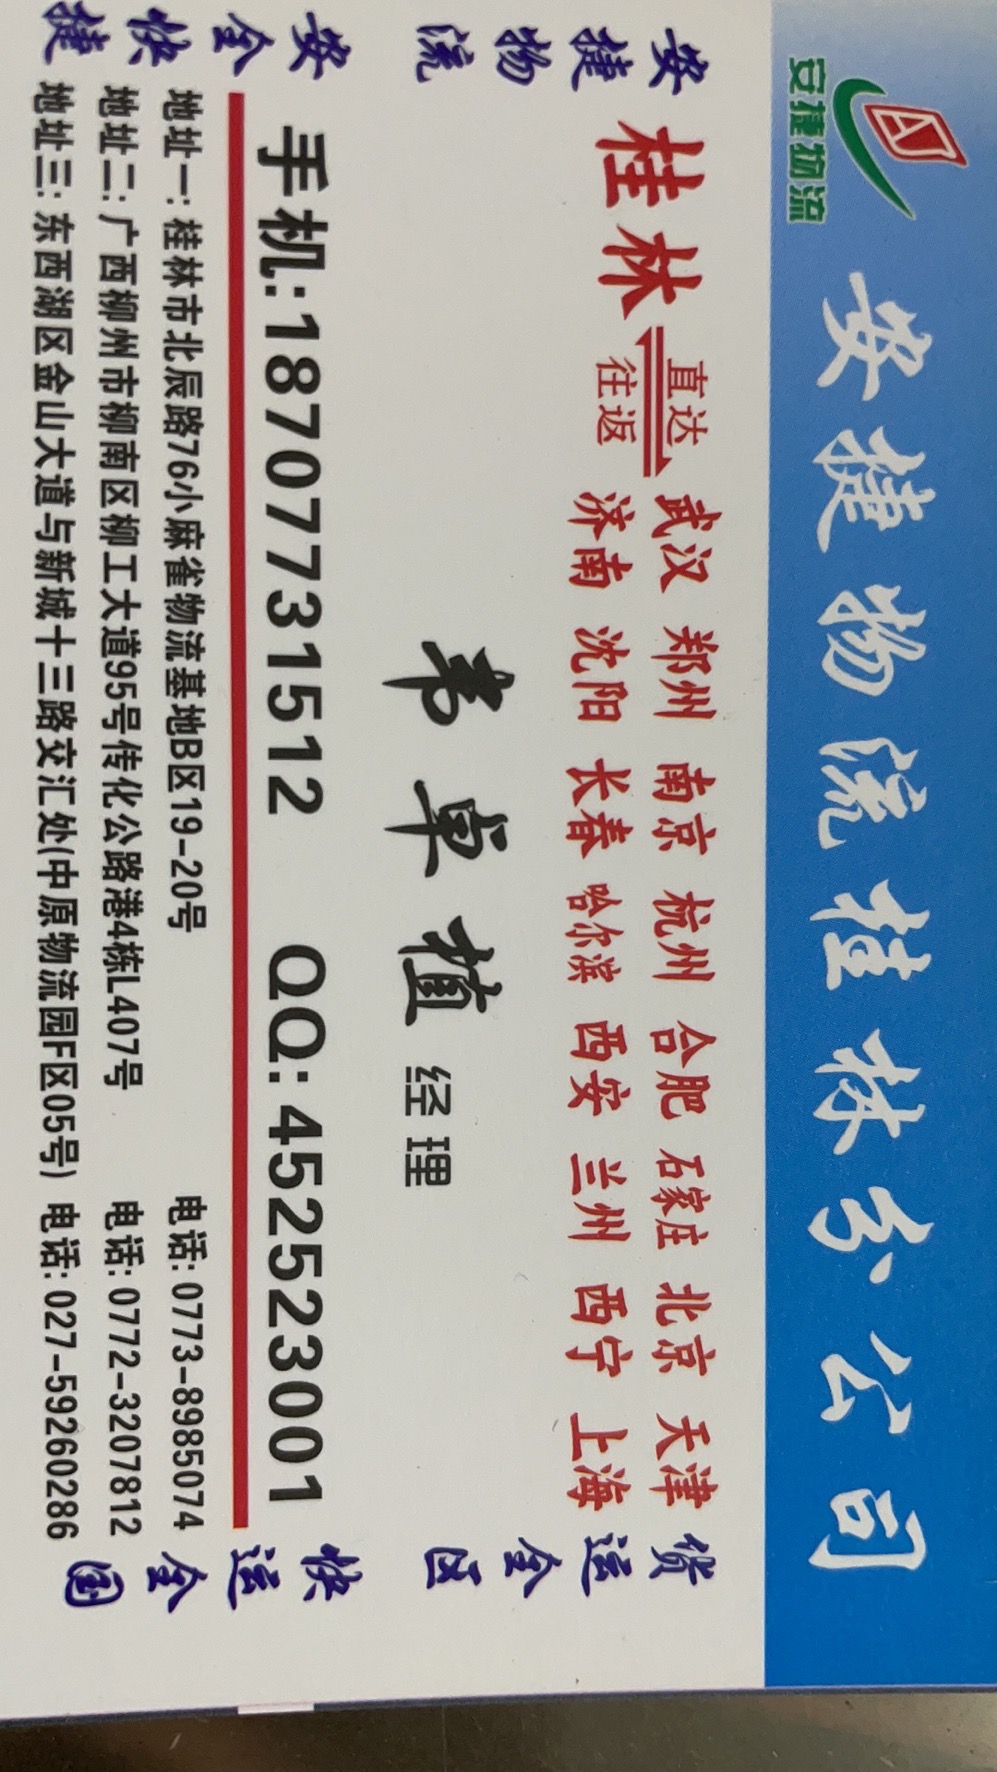 南宁市安捷物流快运有限公司桂林分公司的专线公司的形象展示LOGO